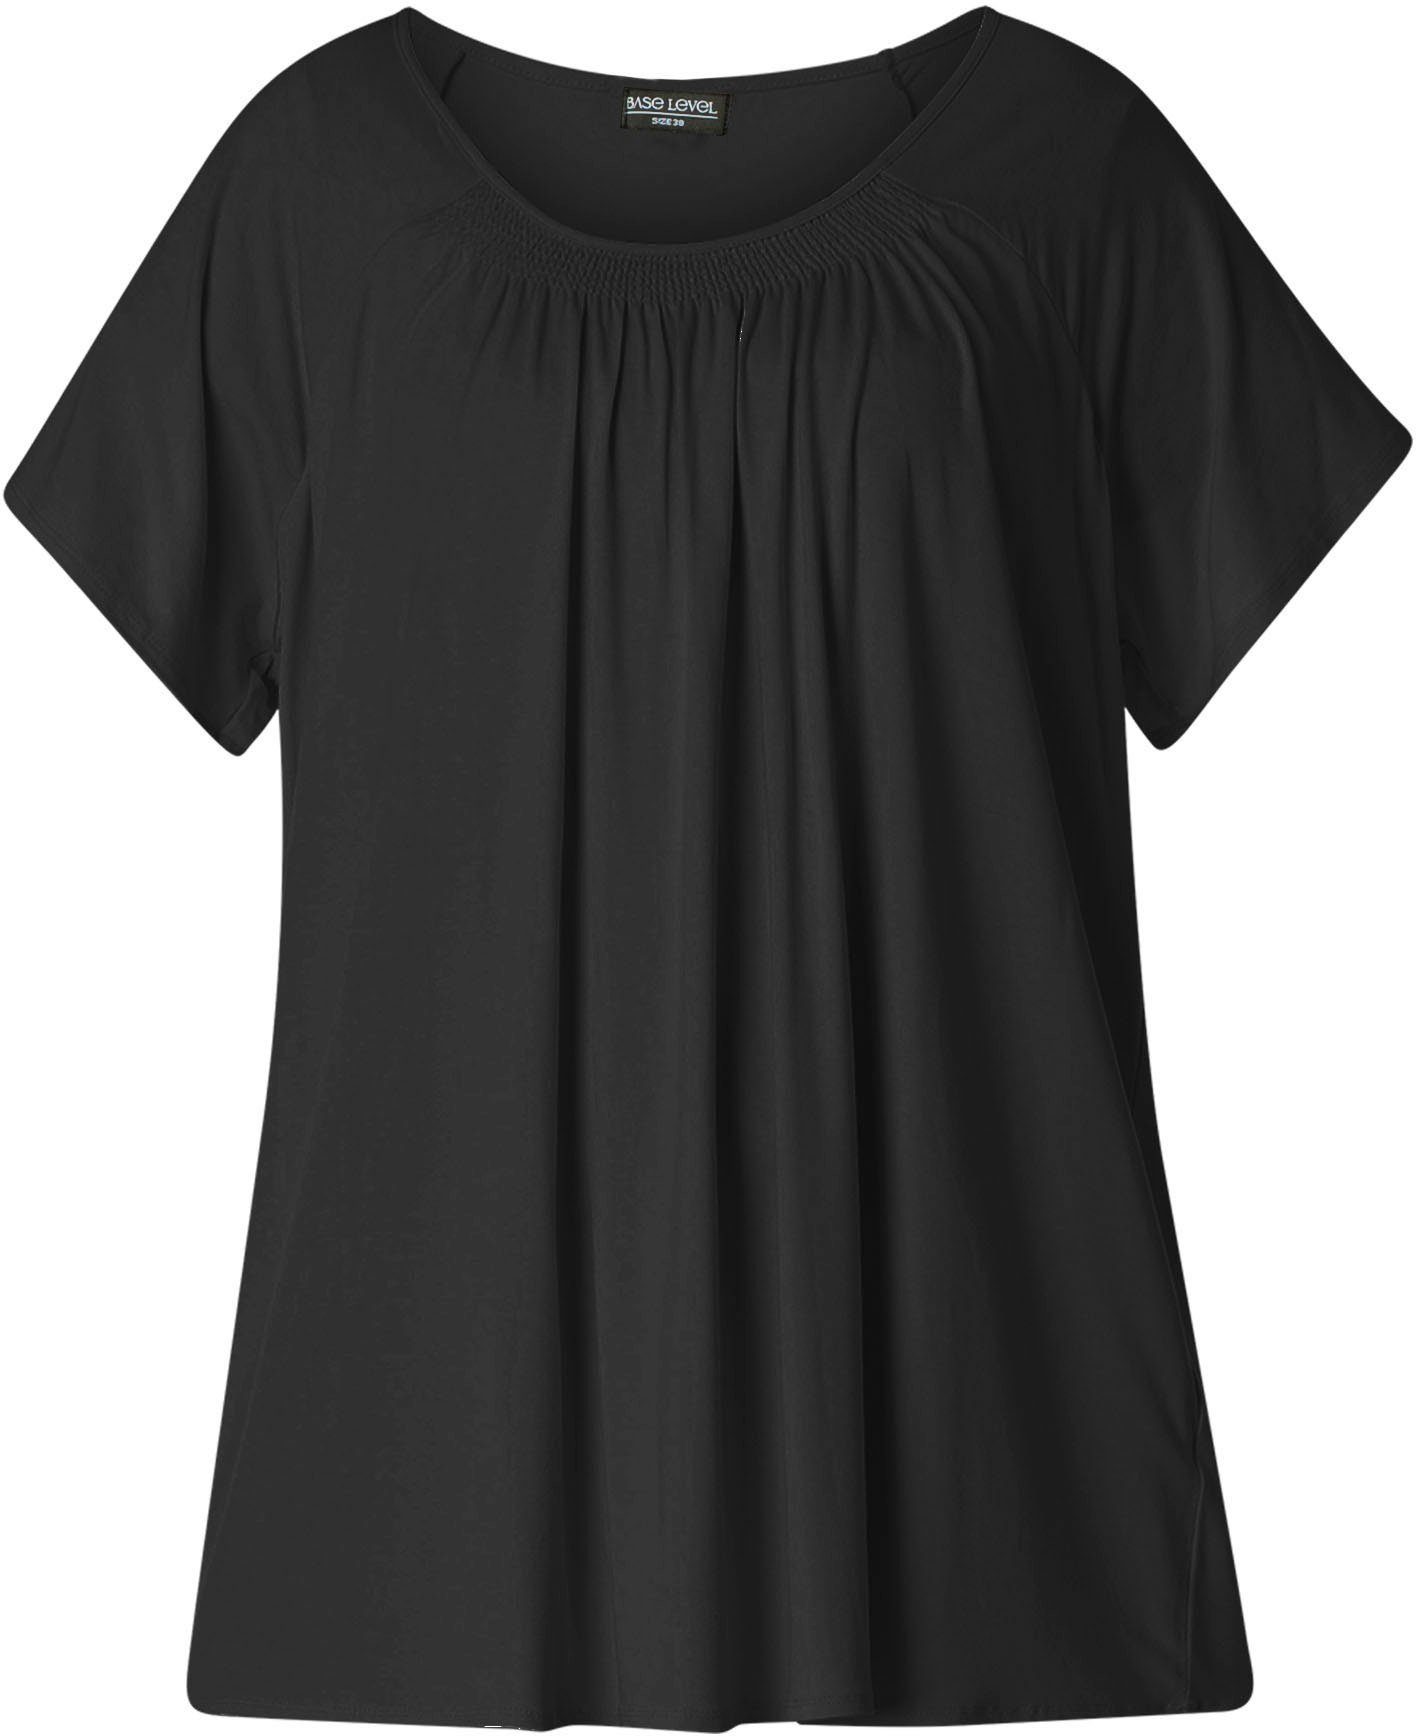 T-Shirt In black Yokia Base formstabiler Curvy Baumwoll-Mischqualität Level